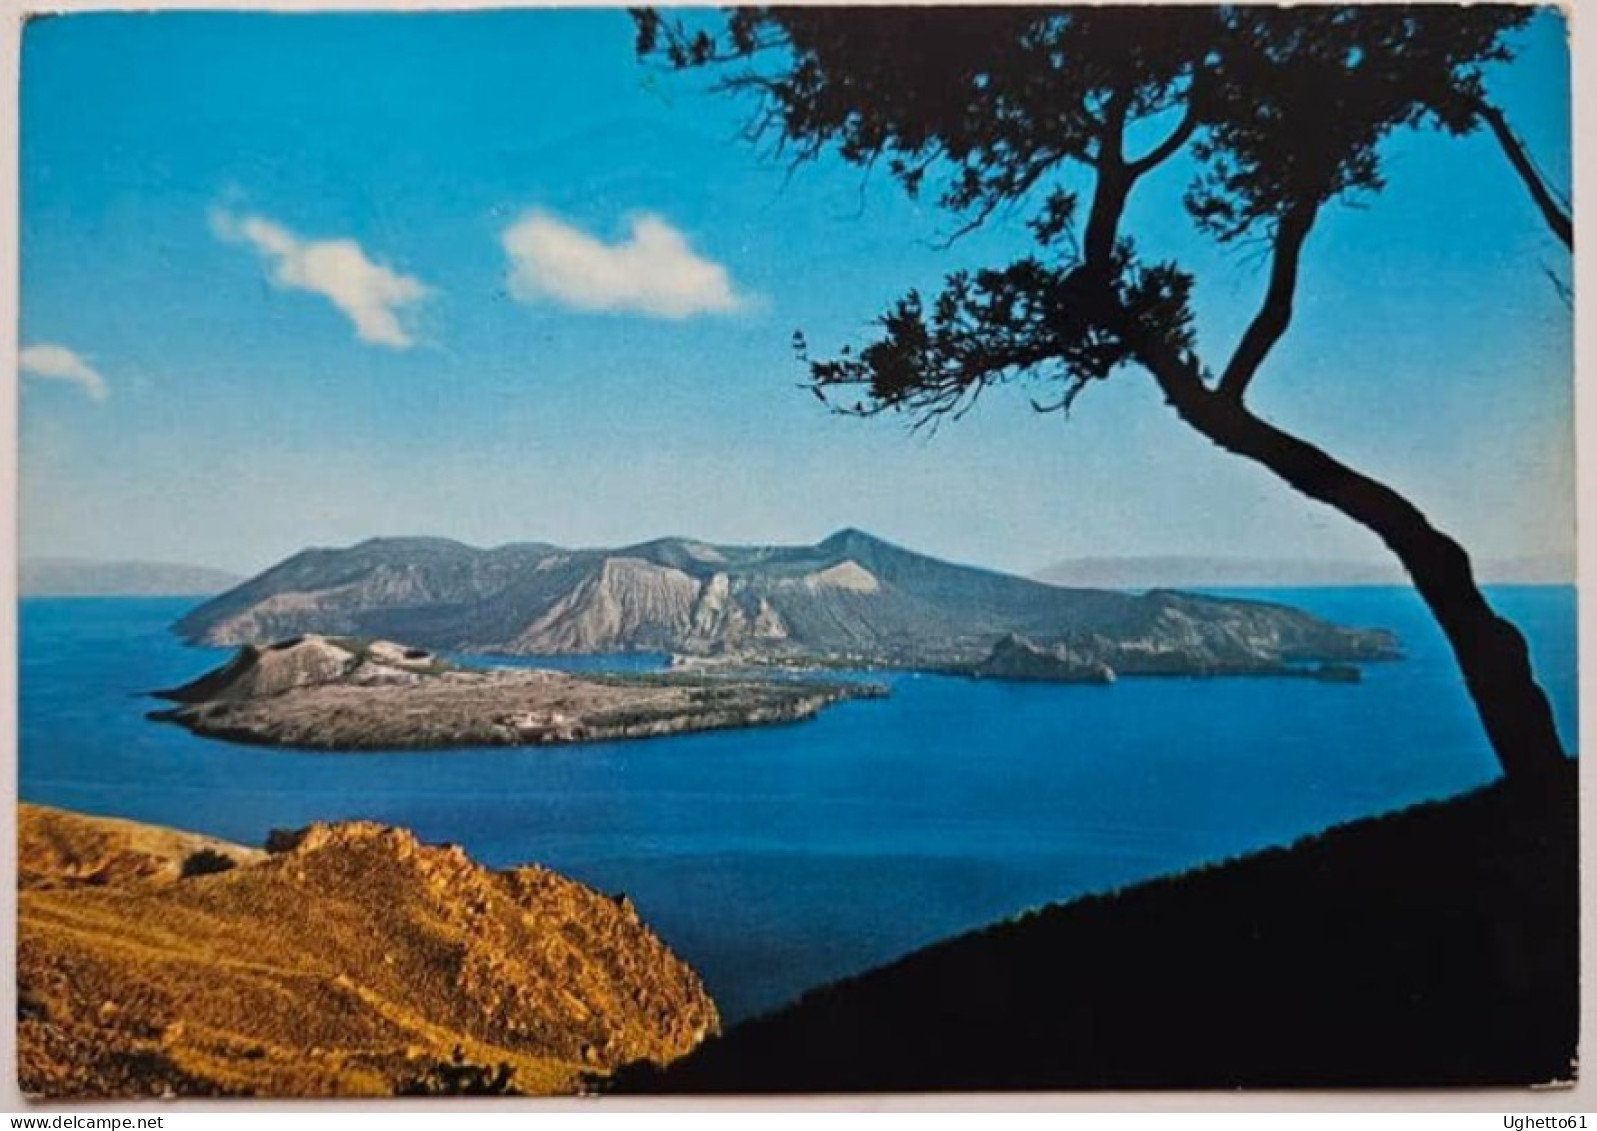 Cartolina Vulcano Con Annullo Speciale Prima Ascensione Della Canna Di Filicudi Isole Eolie 1972- Centenario Parete Est - Mountaineering, Alpinism